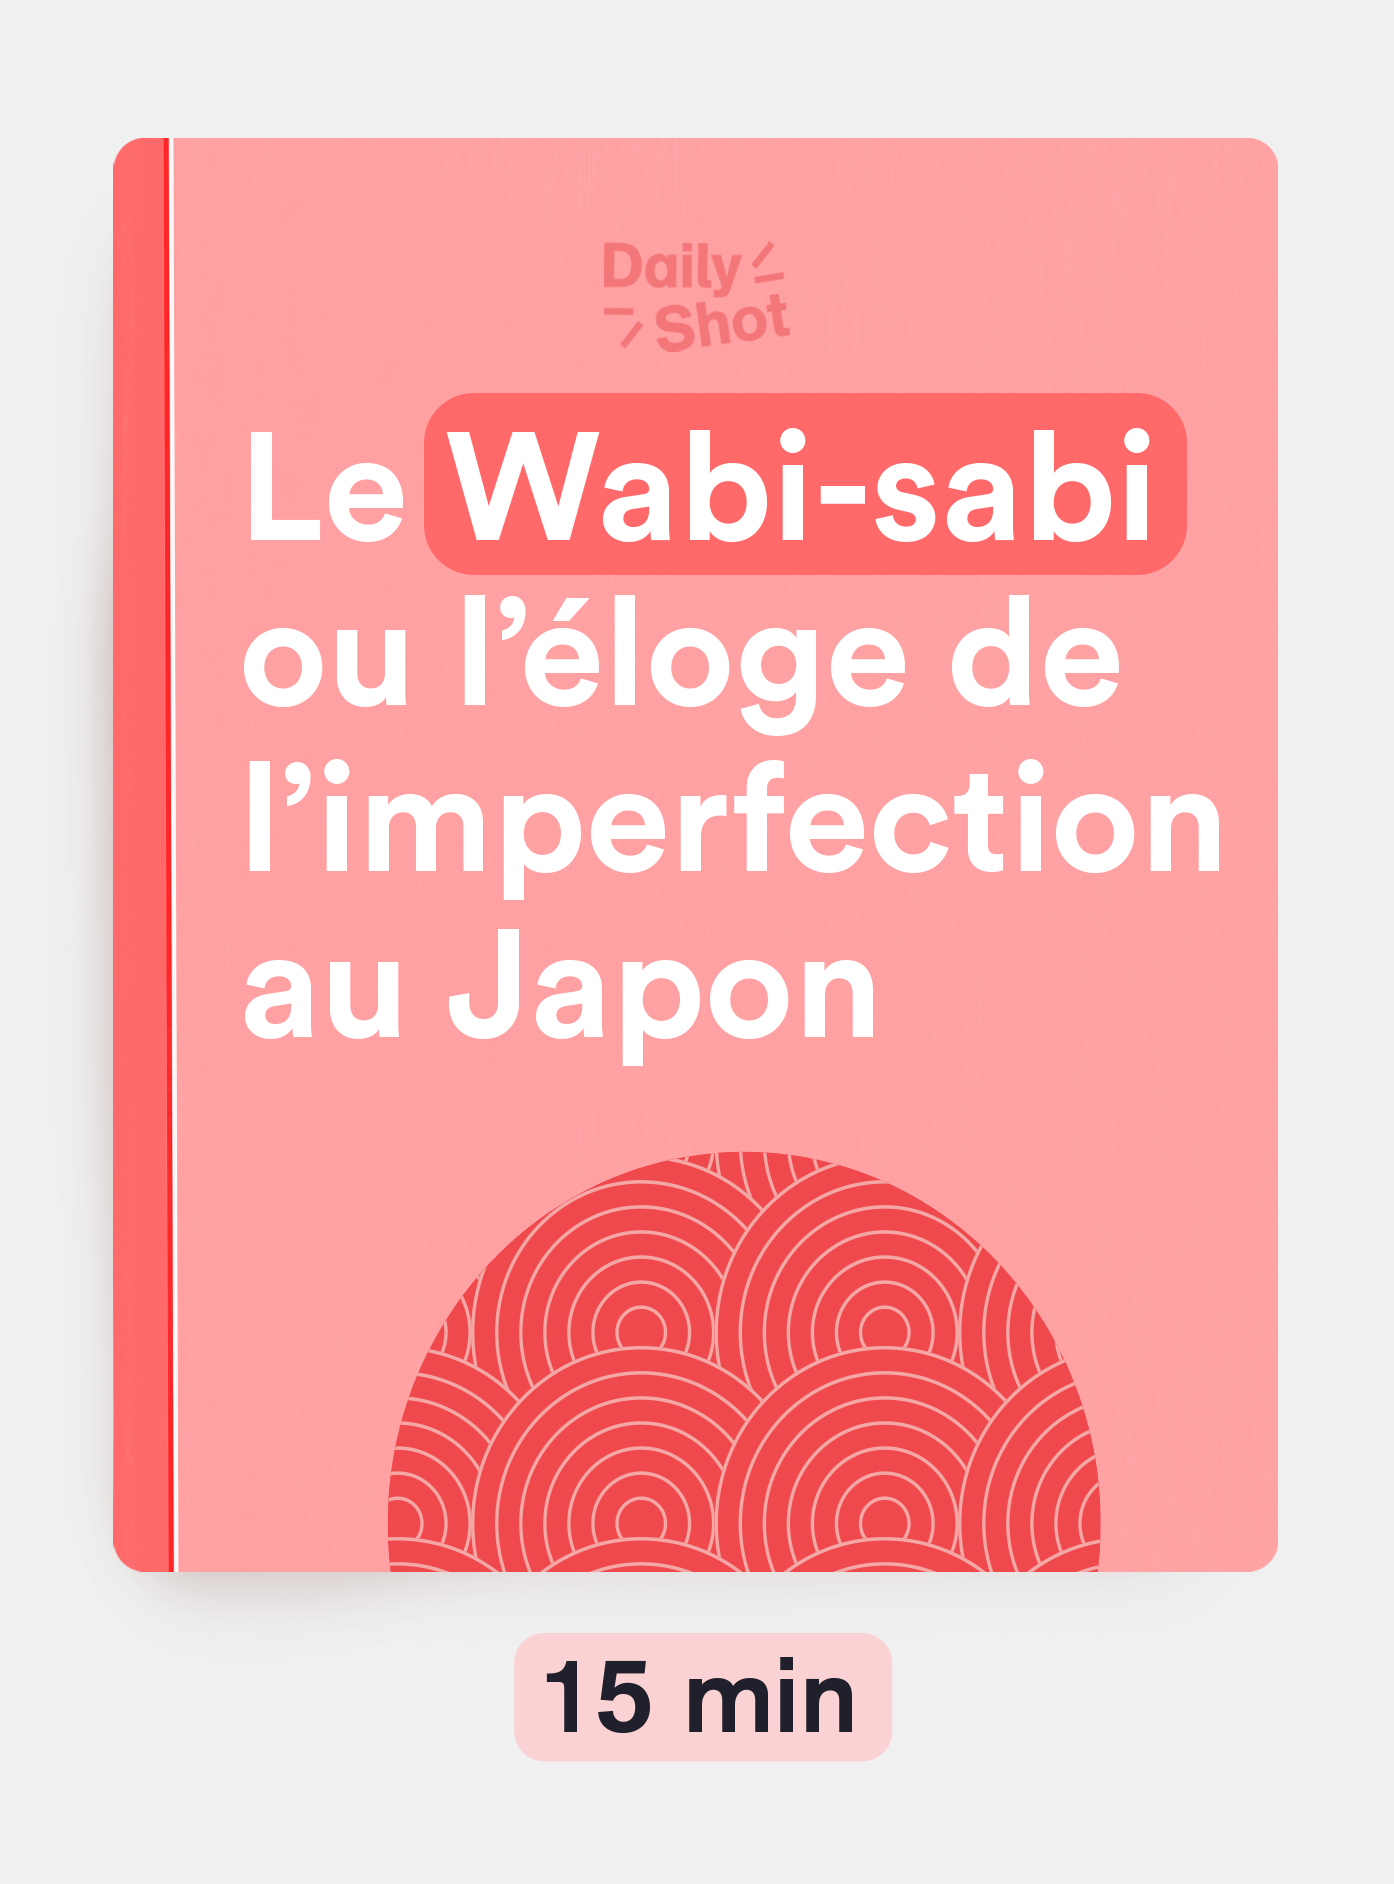 Le Wabi-sabi ou l'éloge de l'imperfection au Japon